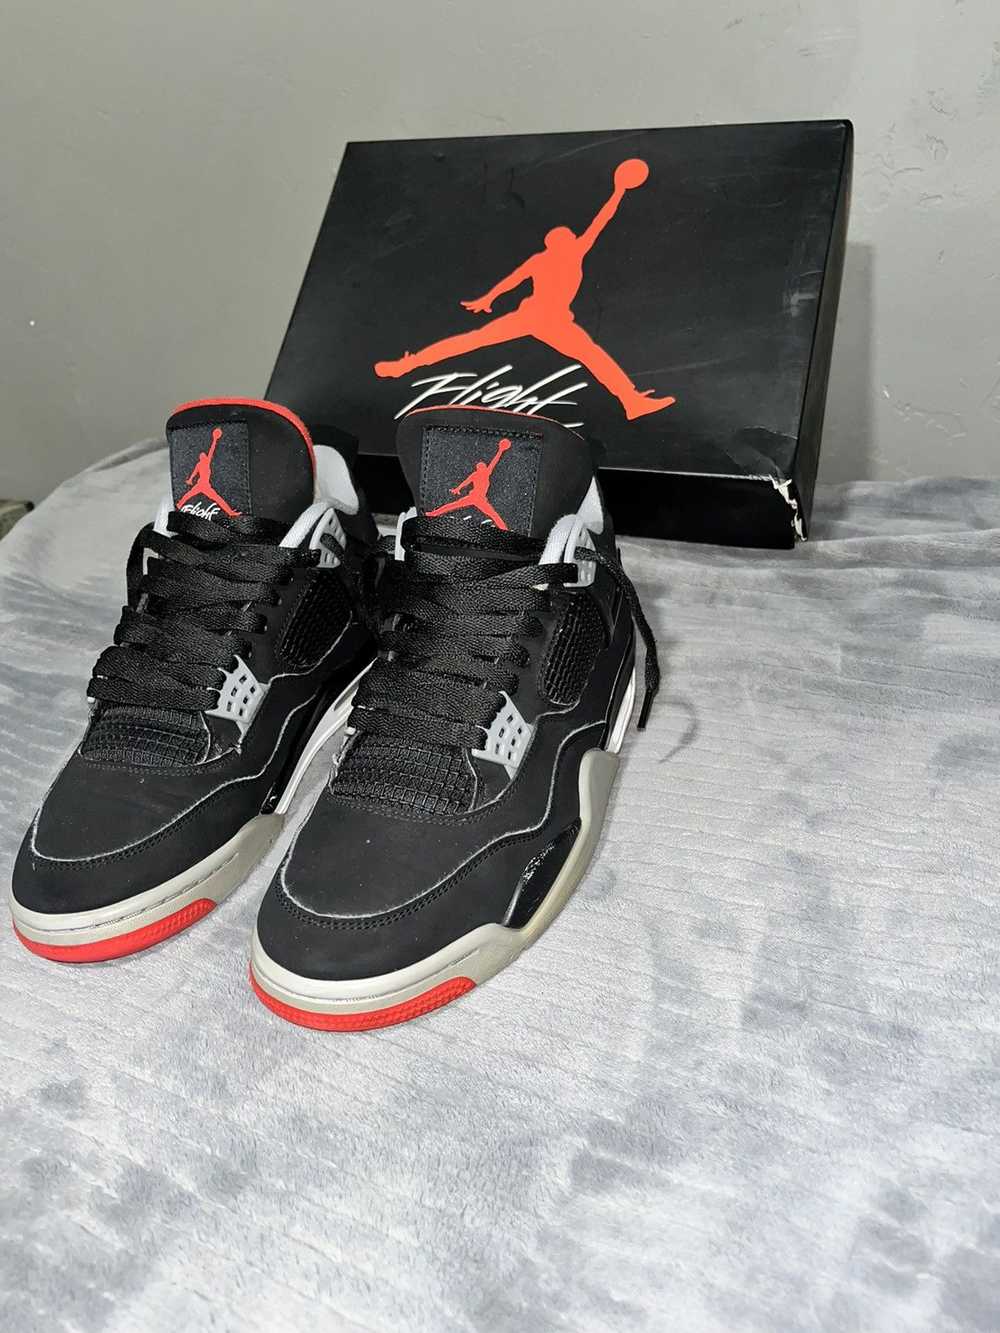 Jordan Brand × Nike Air Jordan retro 4 bred - image 8